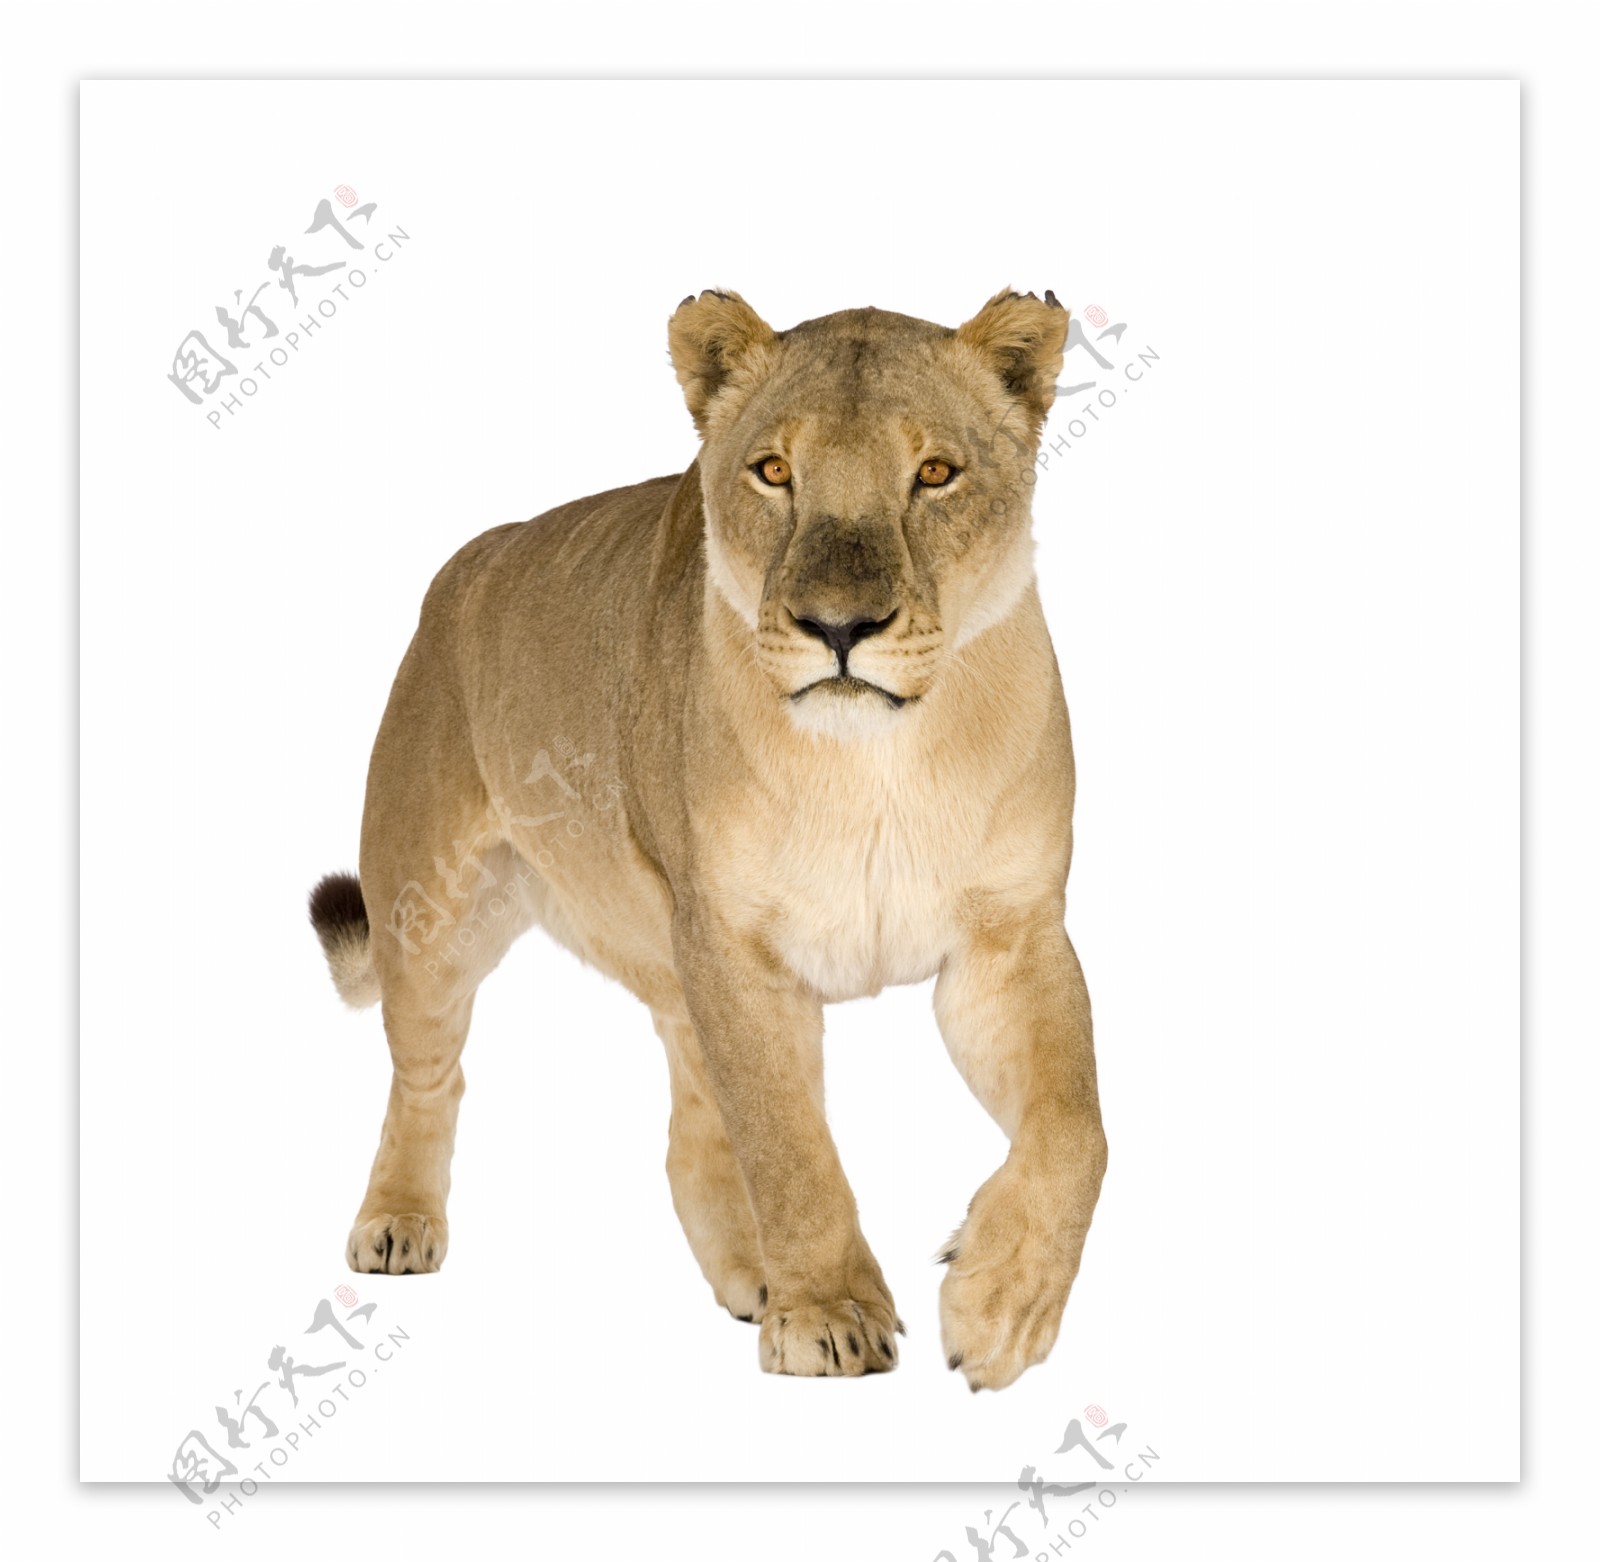 下载壁纸 狮子, 母狮, 爪, 语 免费为您的桌面分辨率的壁纸 2880x1620 — 图片 №610836